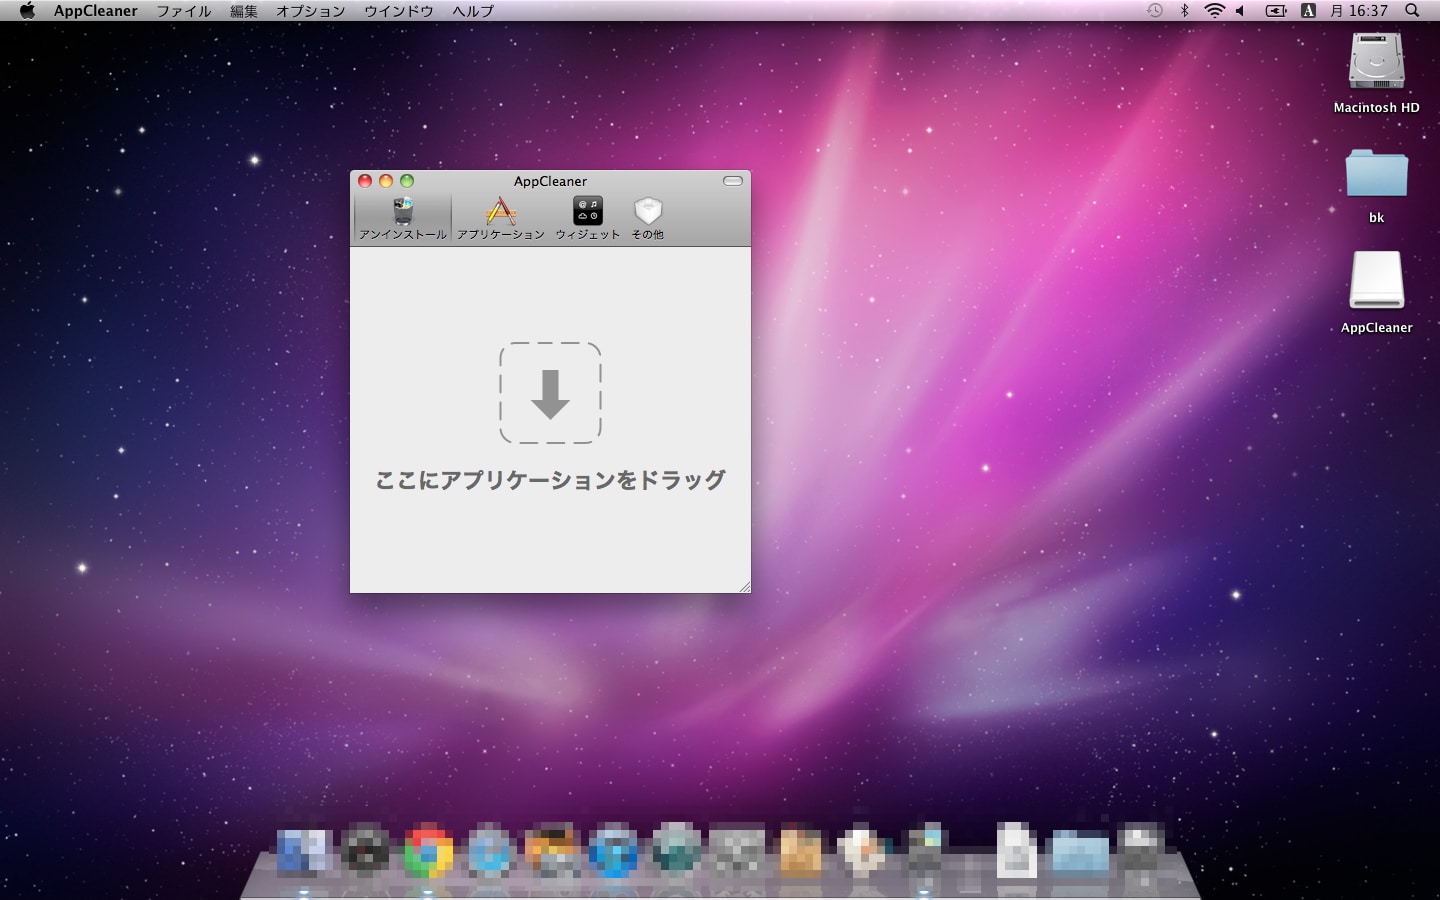 appcleaner for mac 10.5.8